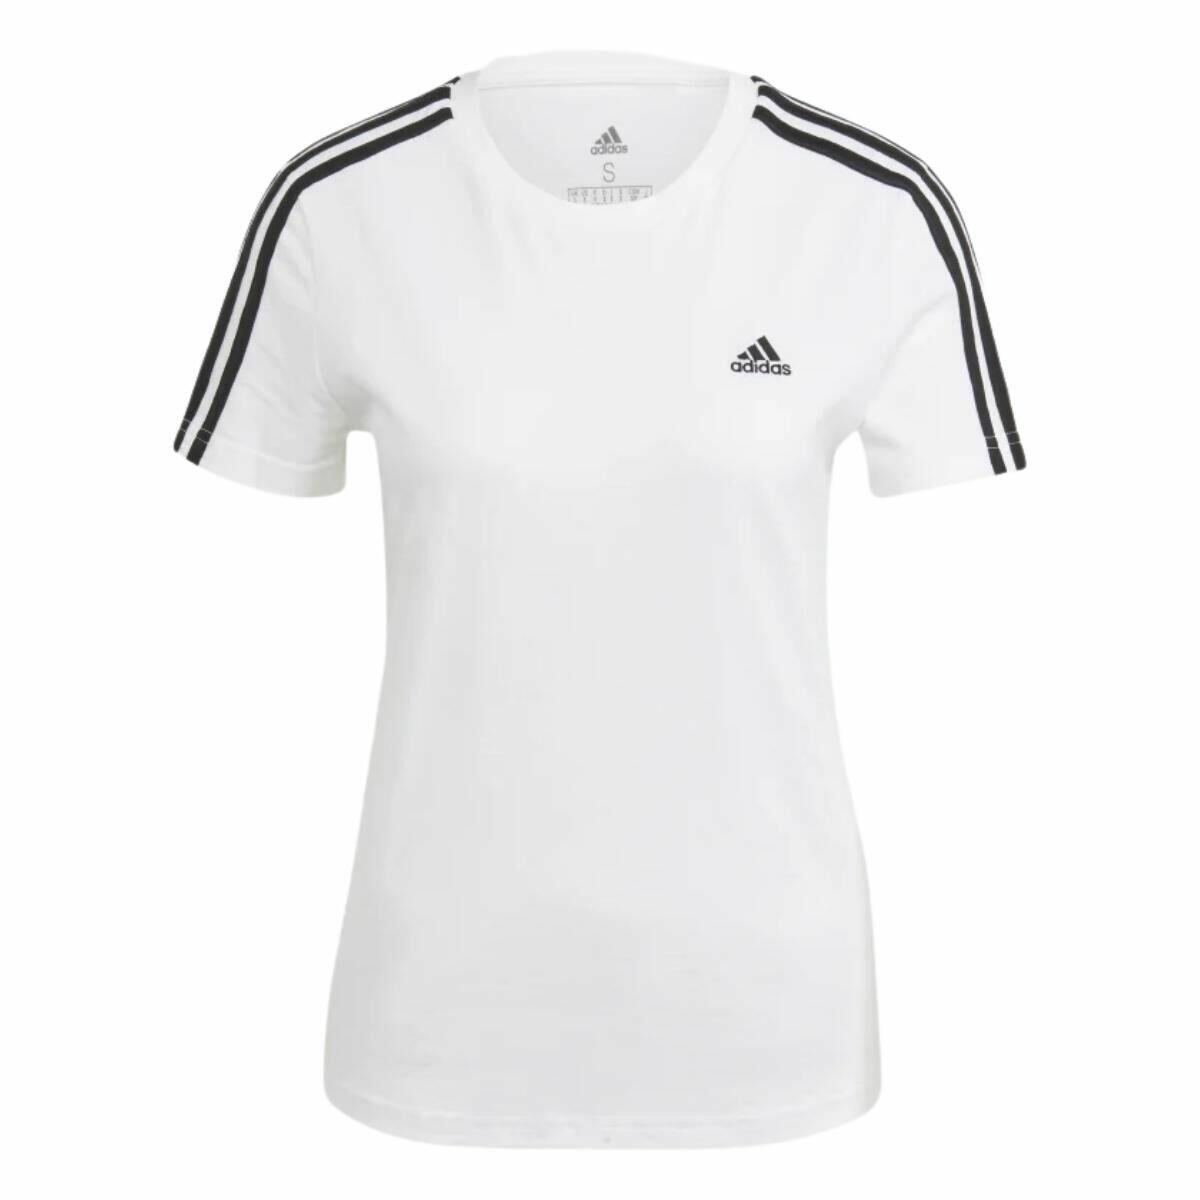 Comprar Blusa Camiseta Adidas Stripes Slim Branca Feminina Original - partir de R$131,22 - Soccer Destination - Tudo para esportes, camisa oficiais do seu clube do coração, artigos esportivos, calçados, moletom,